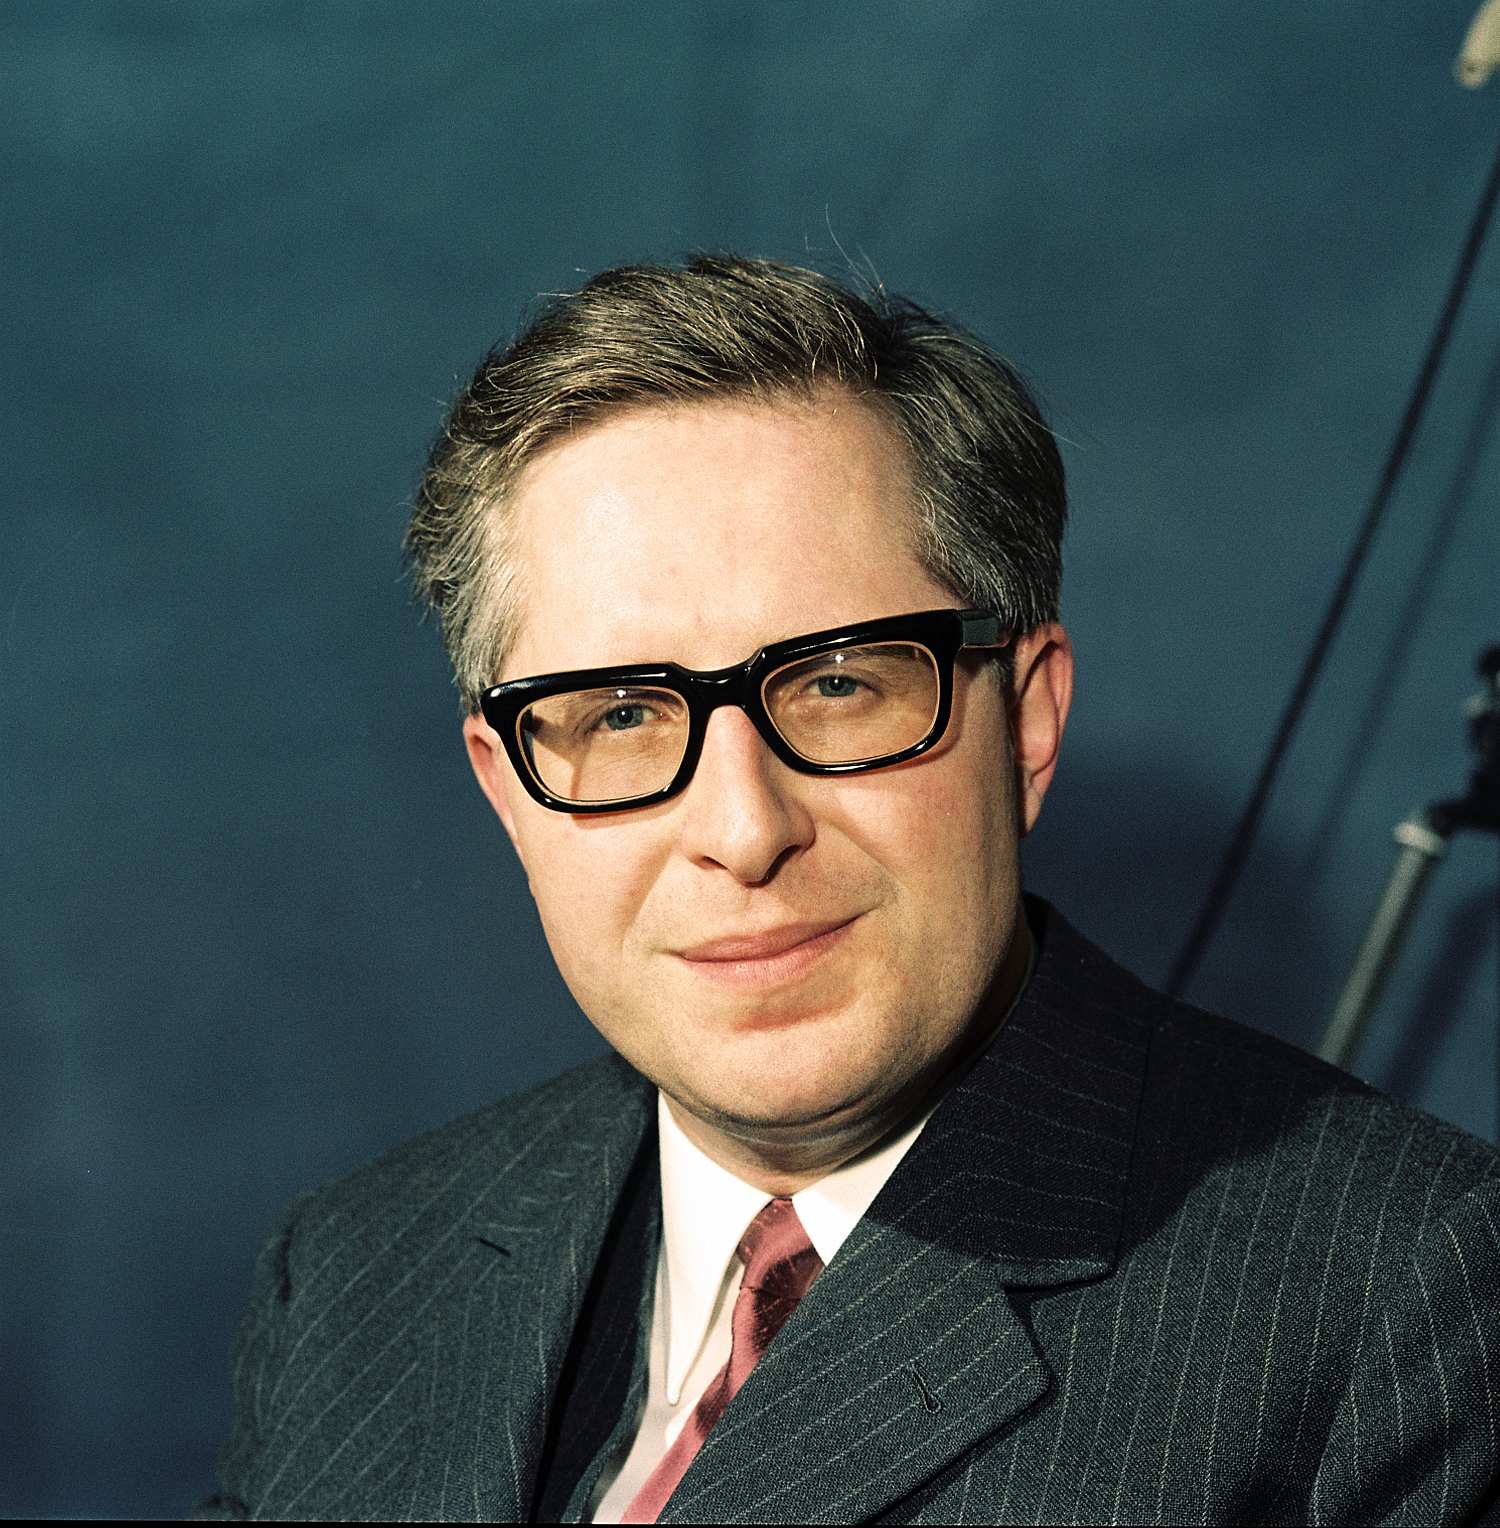 Porträtfotografie des CDU-Politikers Bernhard Vogel, 1970. Er trägt eine schwarze Hornbrille, einen Nadelstreifenanzug mit roter Krawatte und weißem Hemd und lächelt leicht.